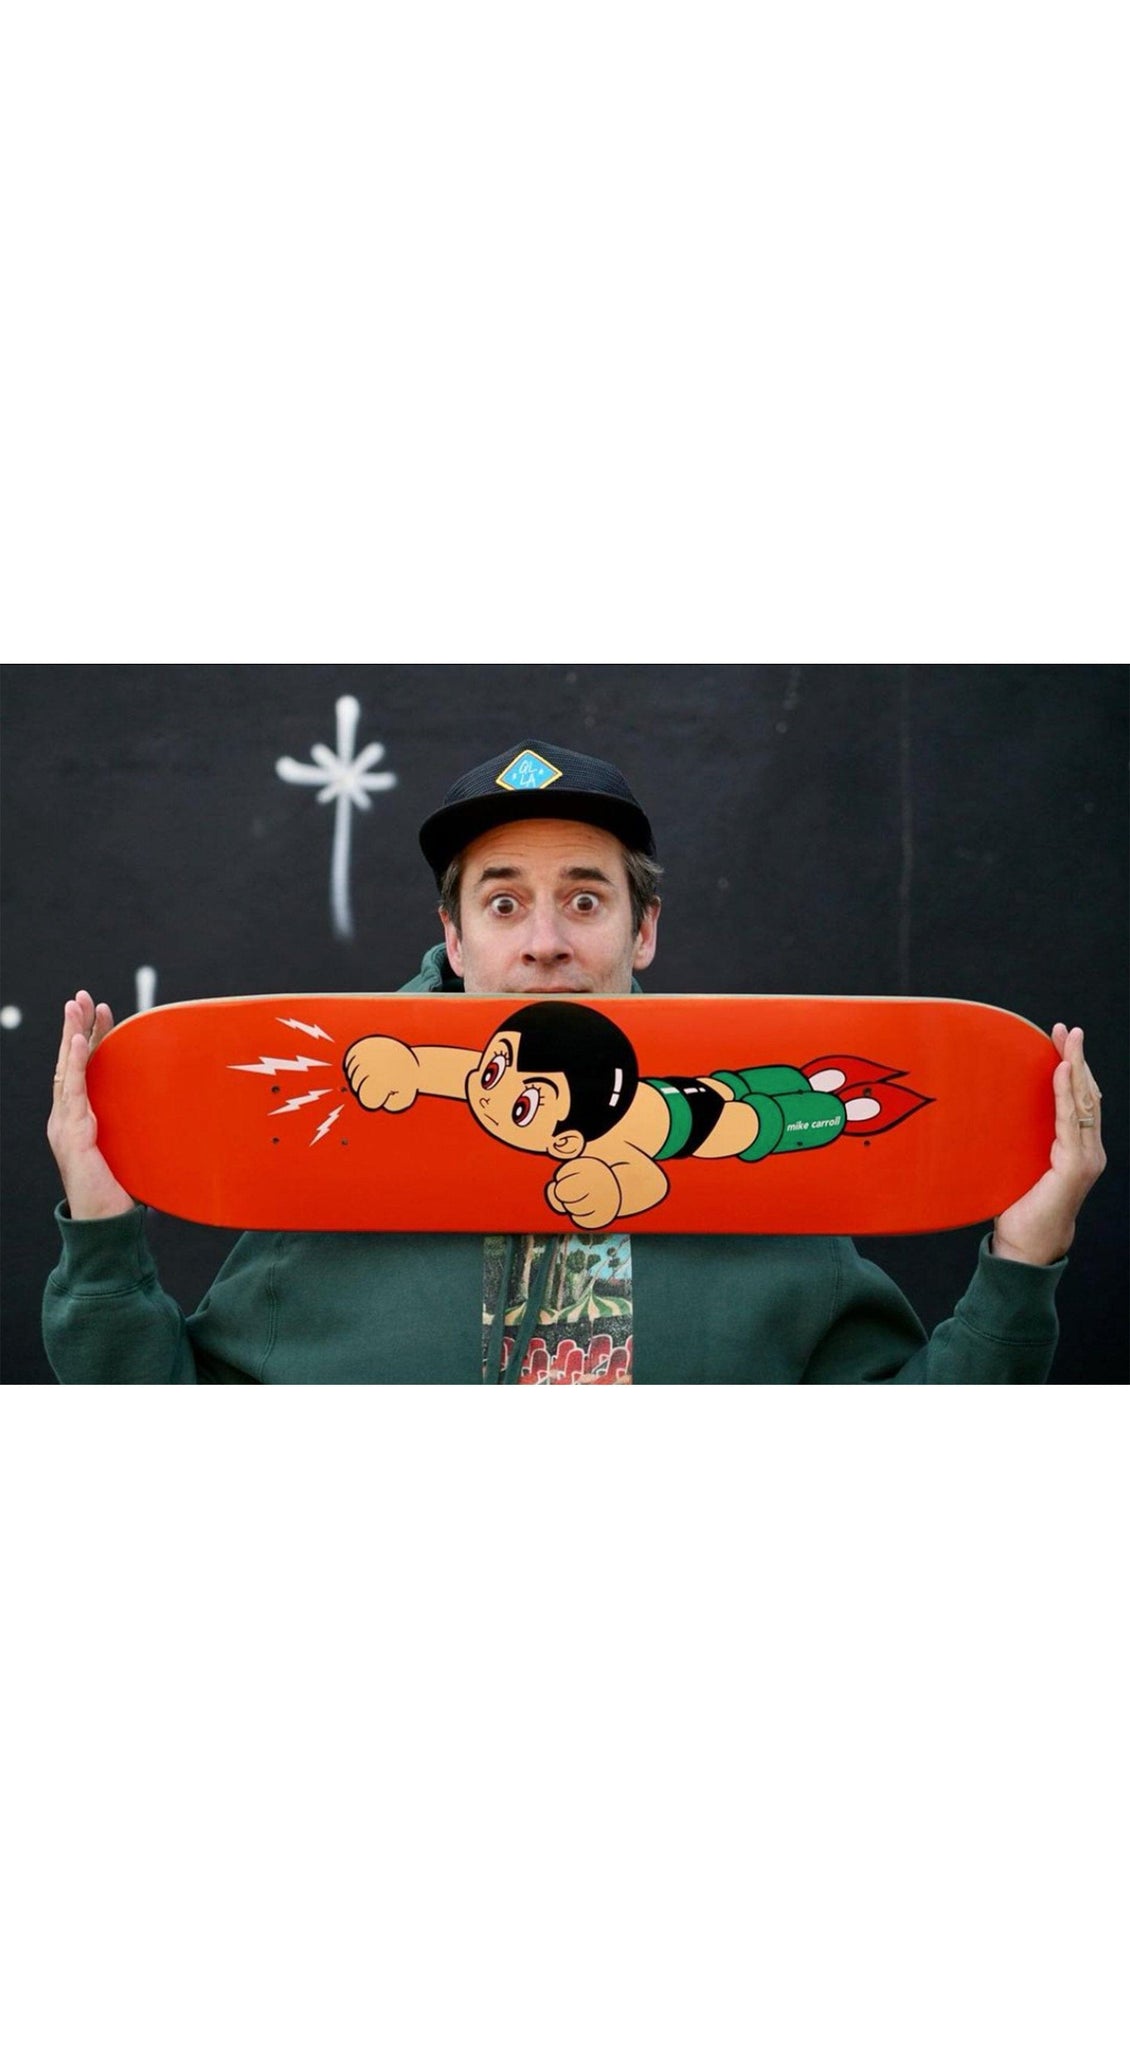 GIRL Astro Boy Reissue Mike Carroll 7.5" - Skateboard Deck Tabla/Deck GIRL 